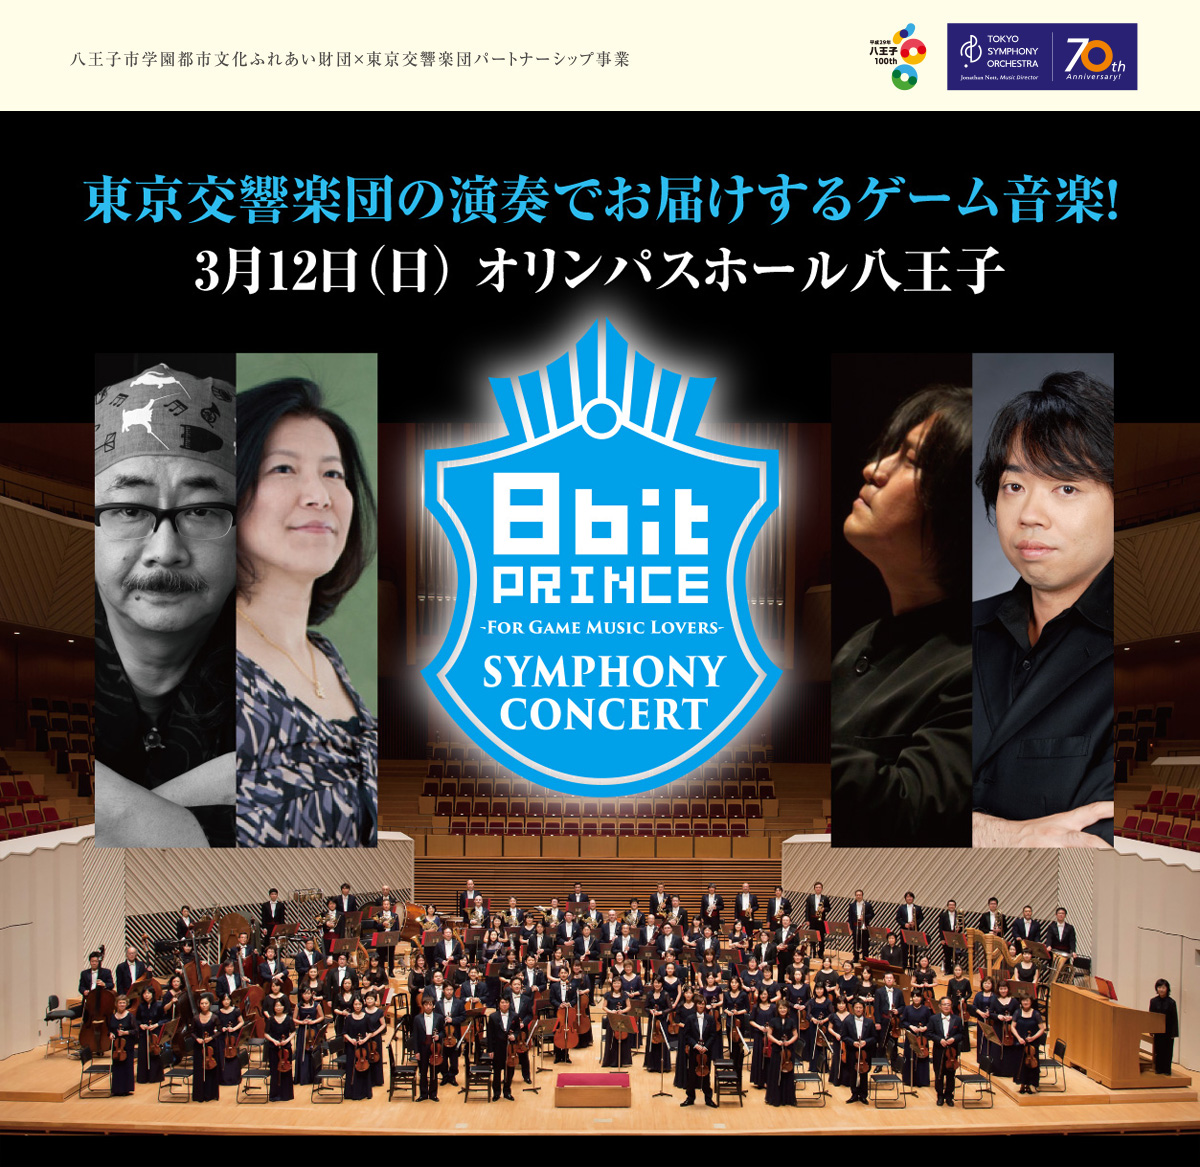 2017年3月12日(日)に2083企画協力の元、東京交響楽団演奏によるゲーム音楽オーケストラコンサート『8bit Prince Symphony Concert -For Game Music Lovers-』が開催。